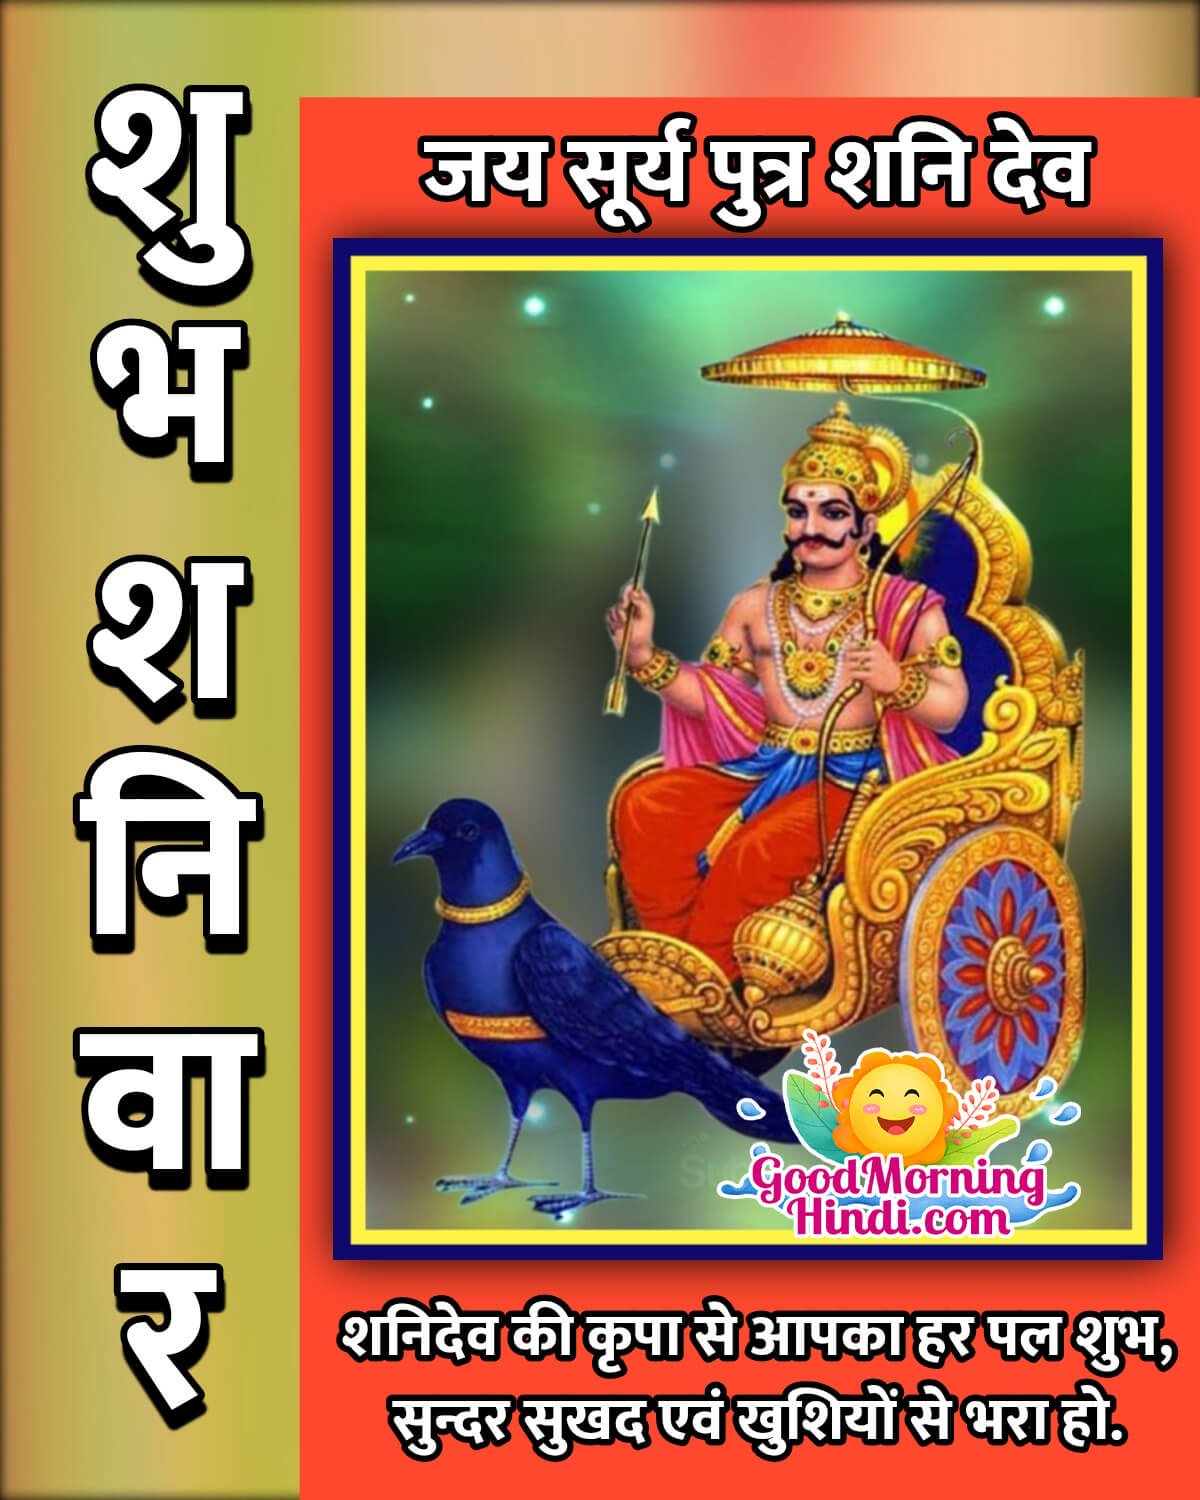 Saturday Shanidev Good Morning Images in Hindi